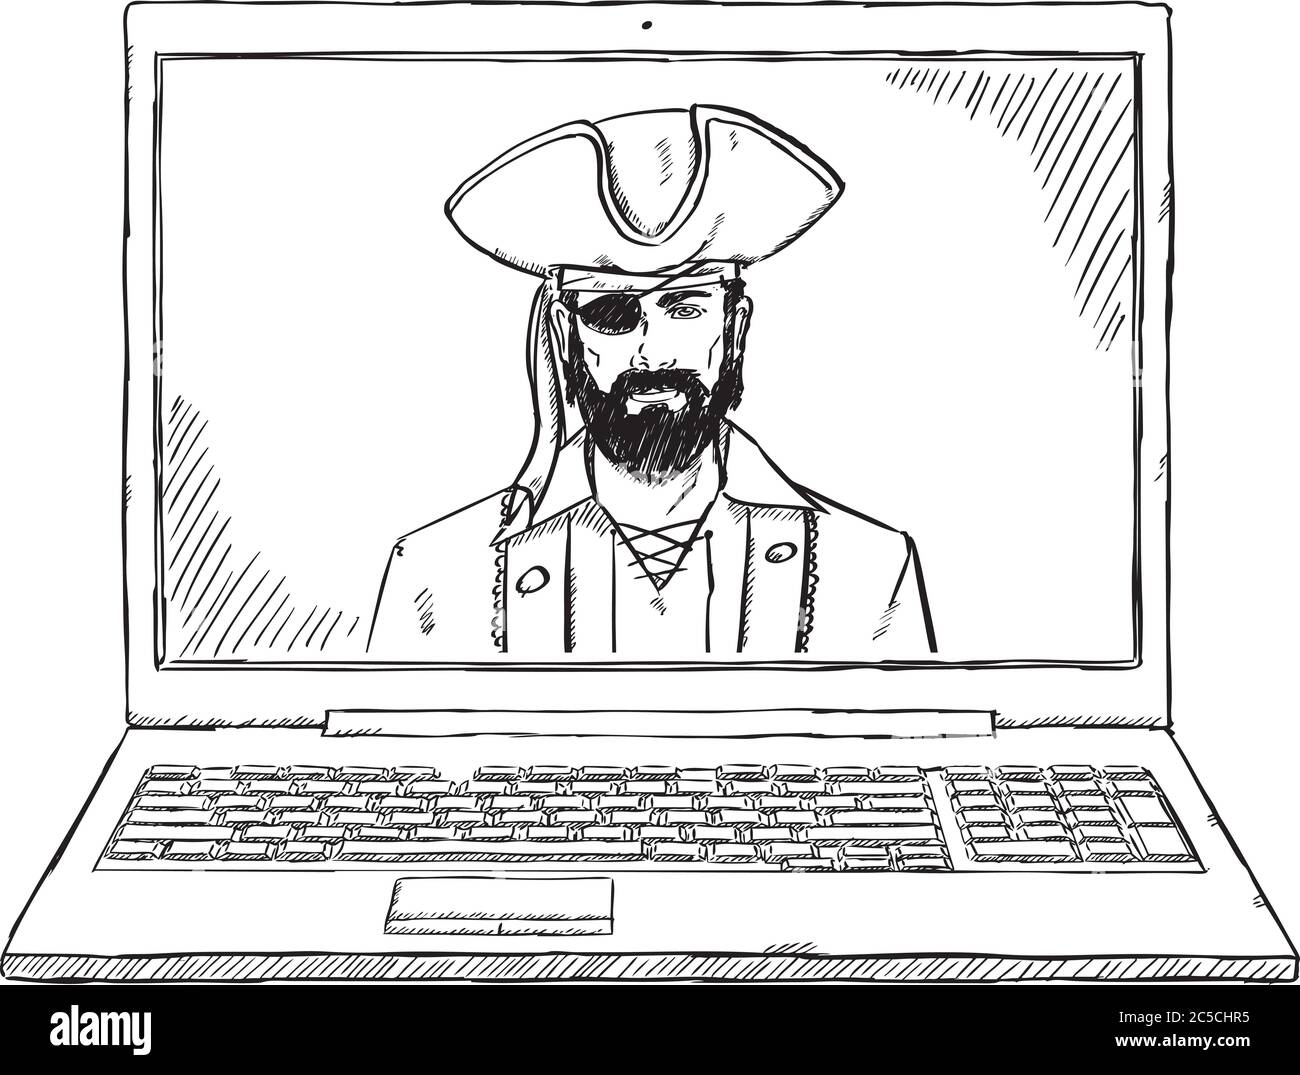 Sketch Stil Doodle Computer Piraten hacken Laptop. Handgezeichnete Vektorgrafik. Stock Vektor